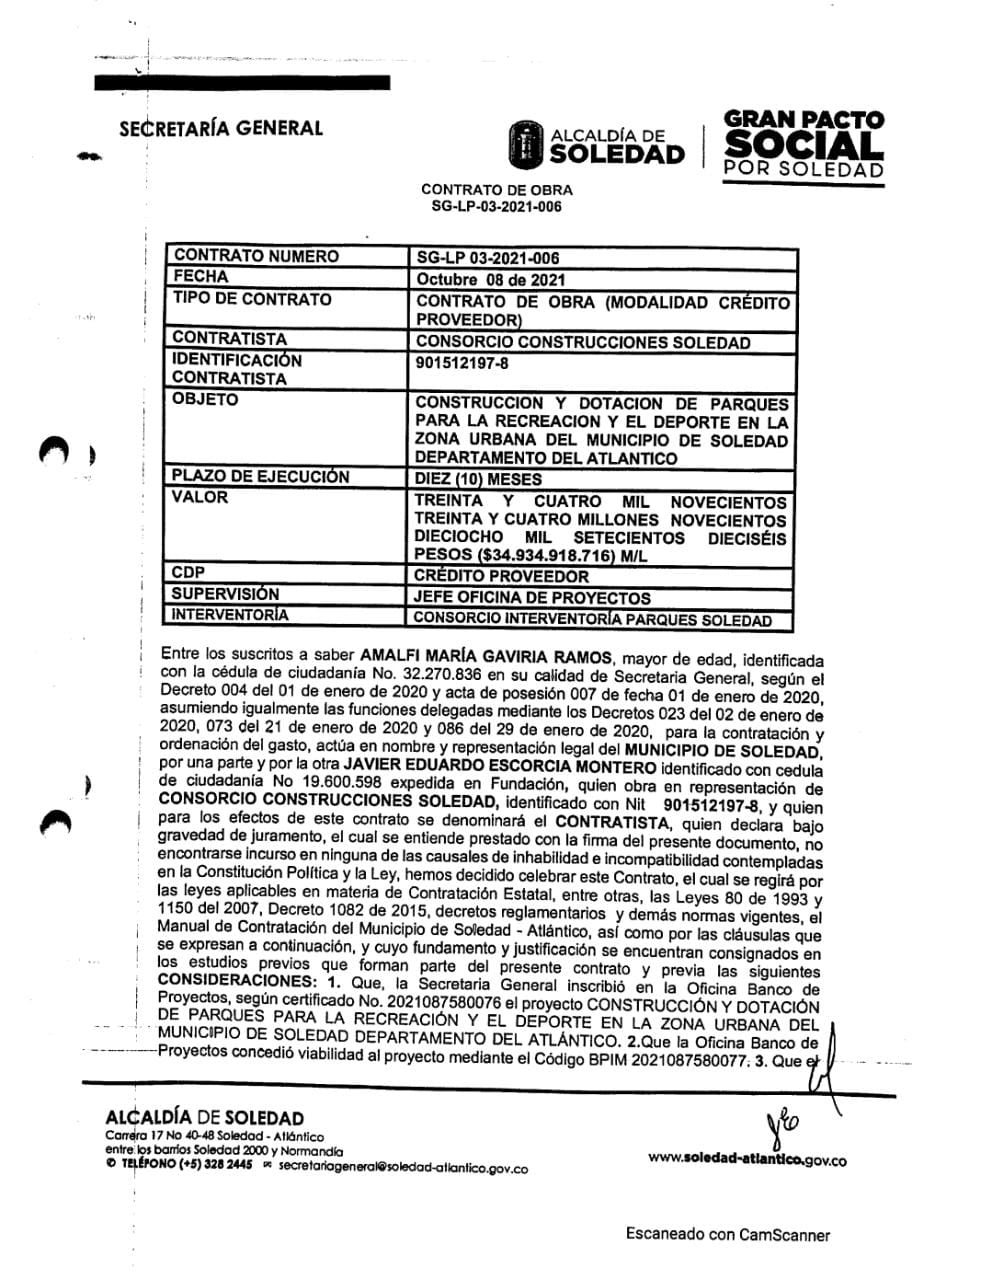 El contrato firmado con el consorcio Construcciones Soledad.